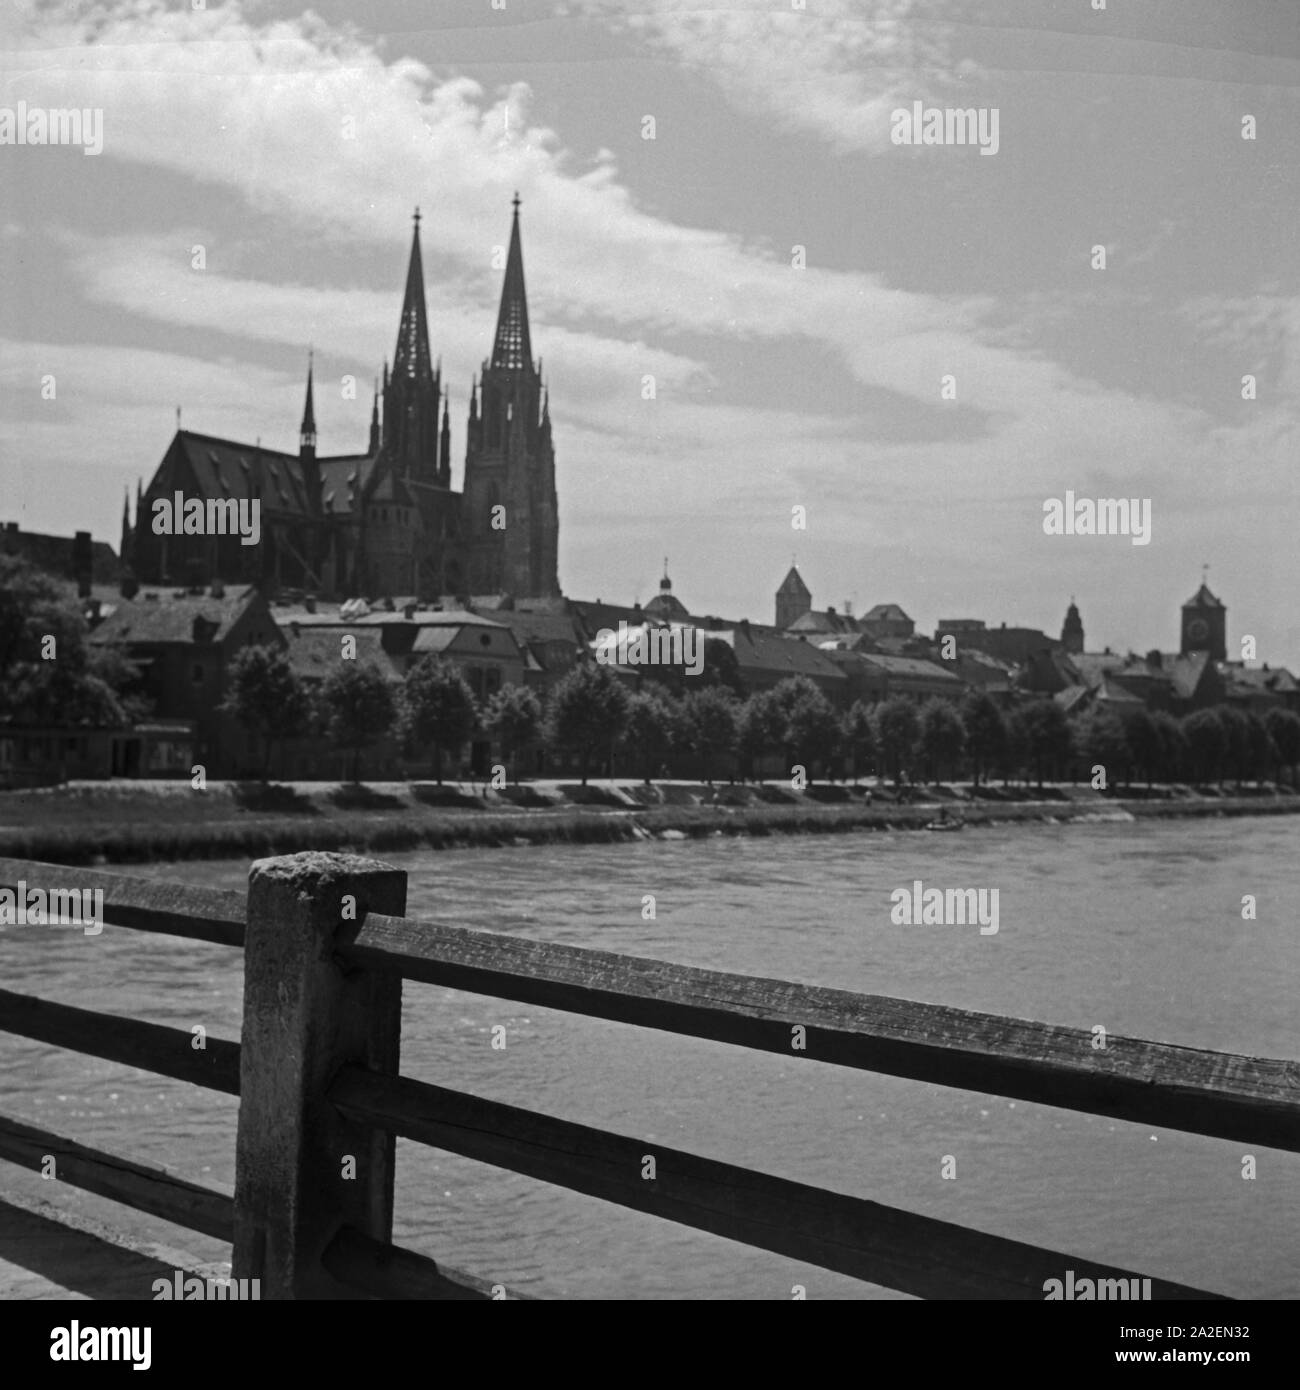 Das Panorama von Regensburg mit Dom, Donau und dem Uhrturm des Alten Rathauses, Deutschland 1930er Jahre. Skyline of Regensburg with cathedral, river Danube and the clock tower of Altes Rathaus town hall, Germany 1930s. Stock Photo